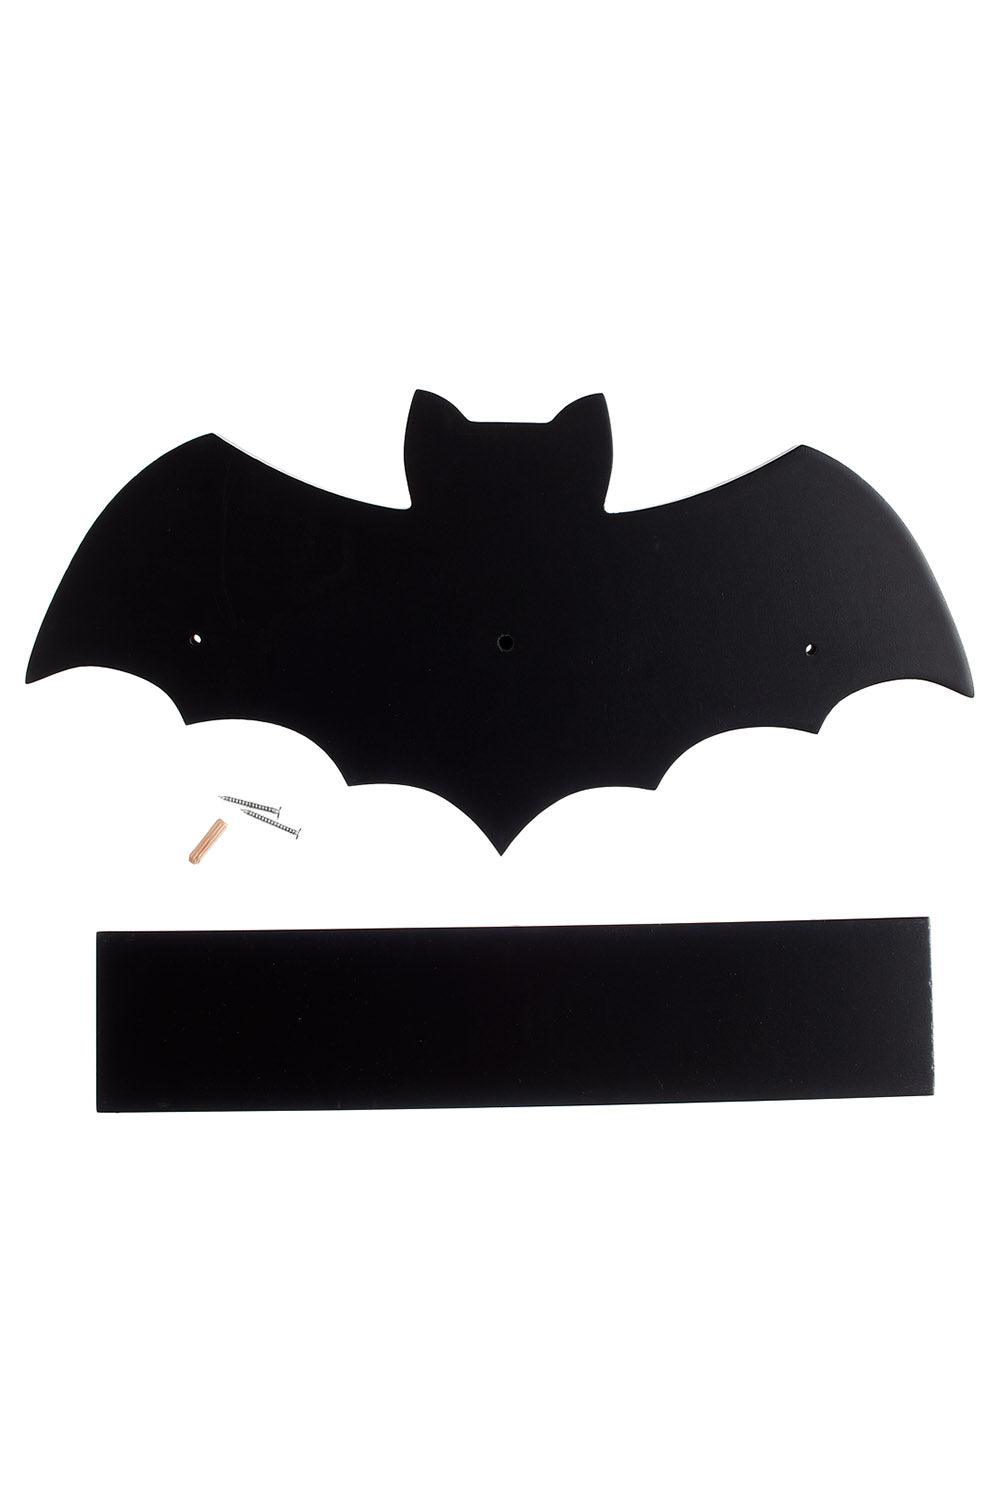 Sourpuss Bat Shelf [Black] - VampireFreaks